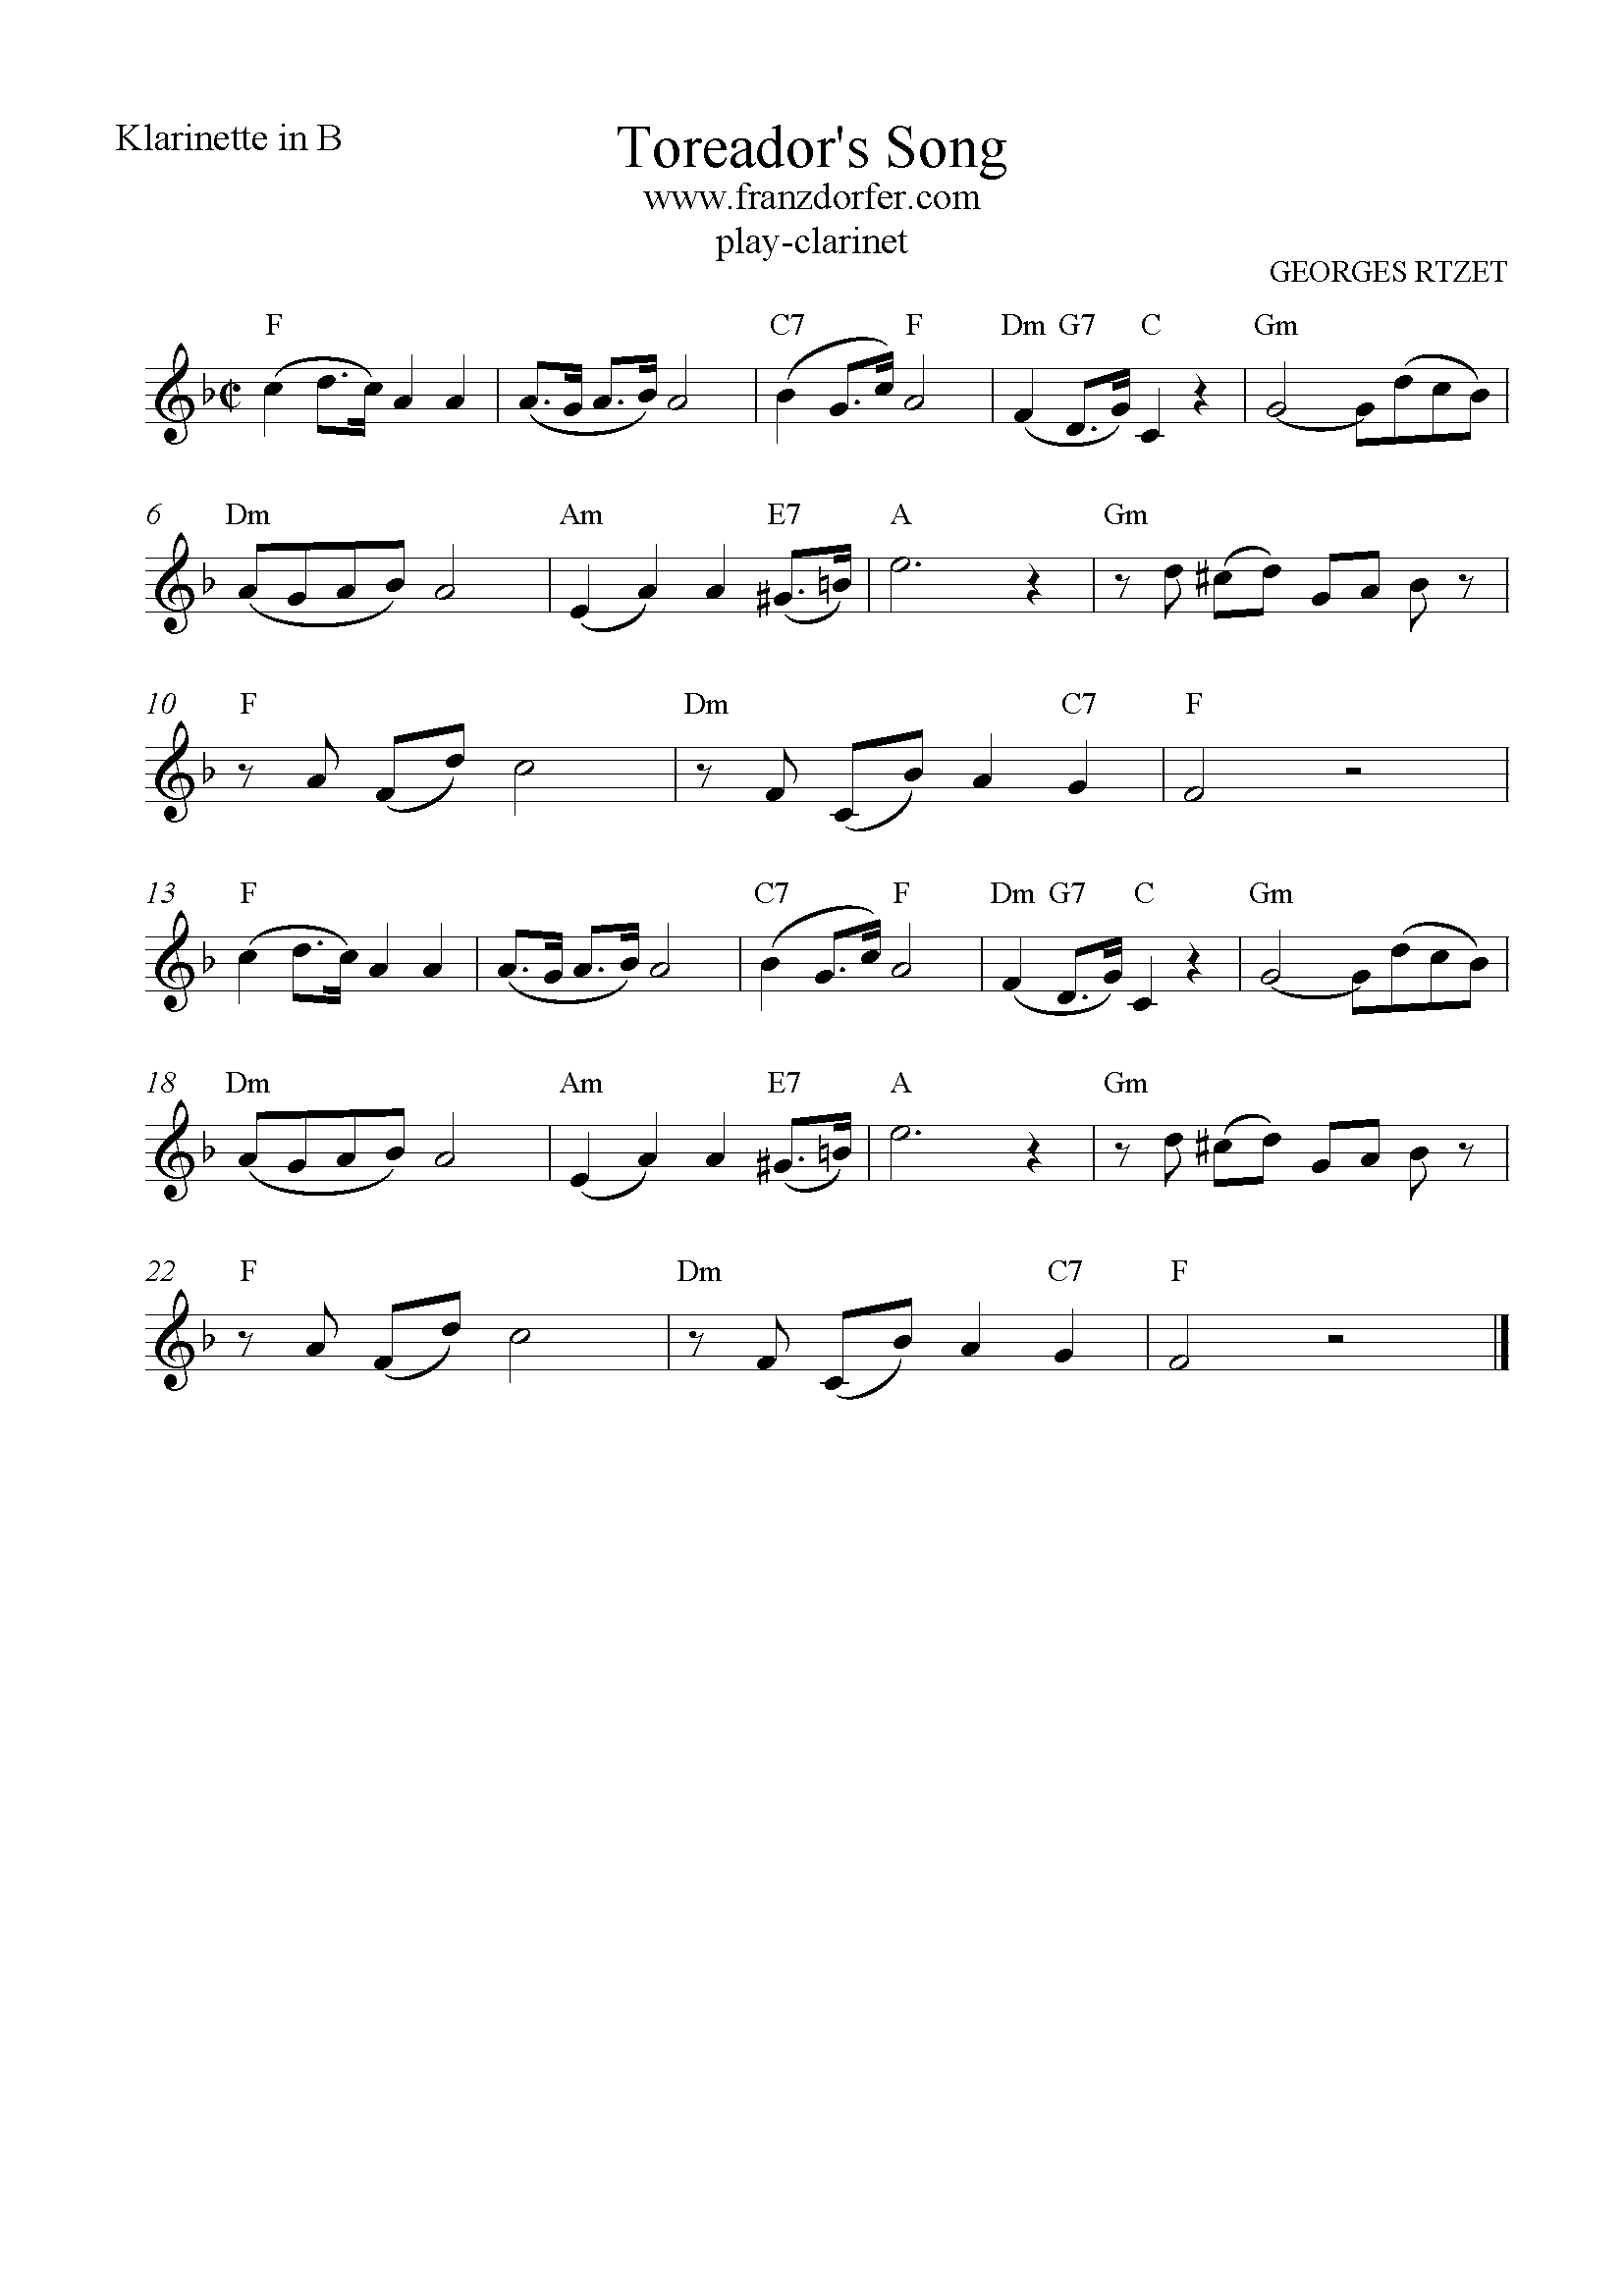 Toreador's Song Clarinet